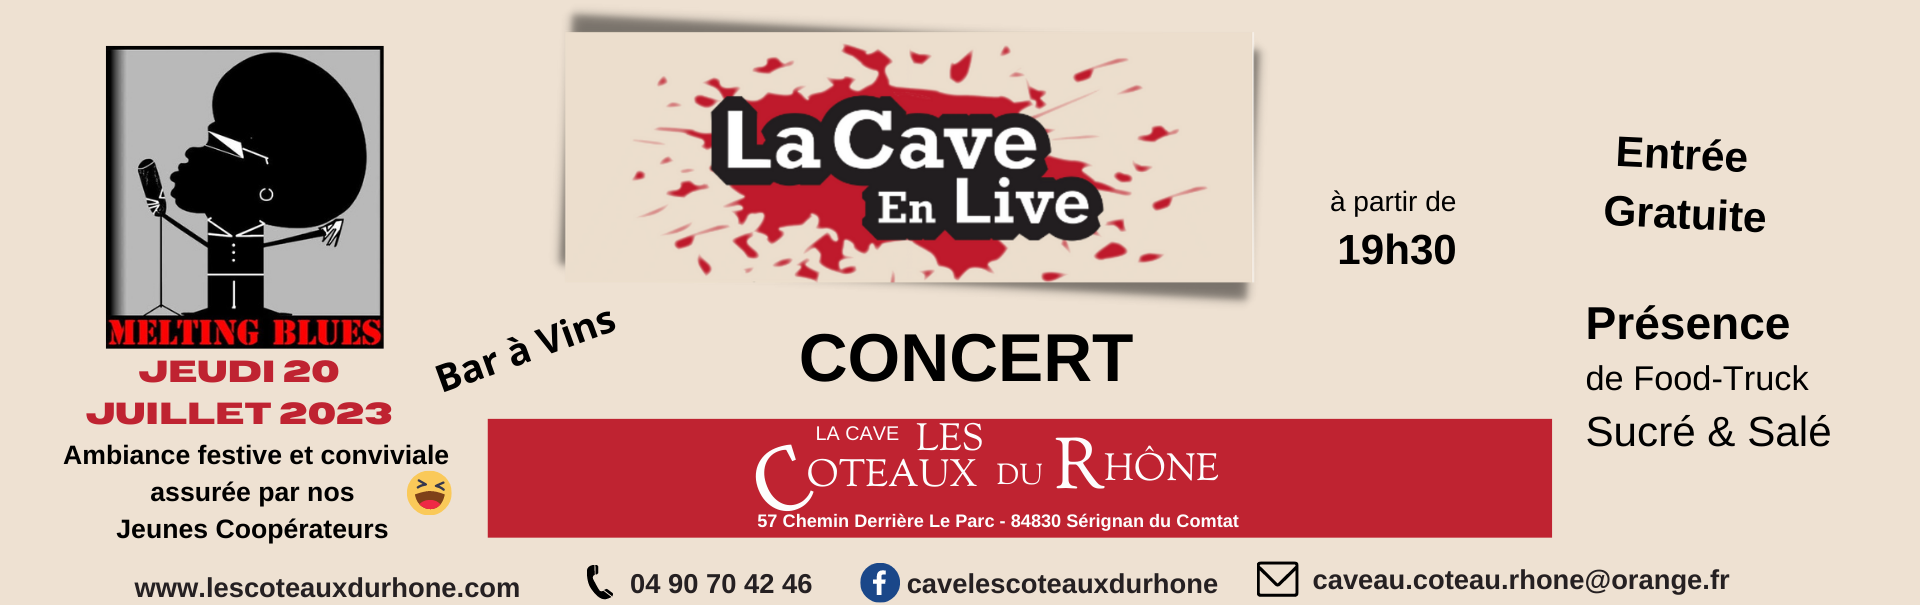 CAVE EN LIVE - concert gratuit - MELTING BLUES